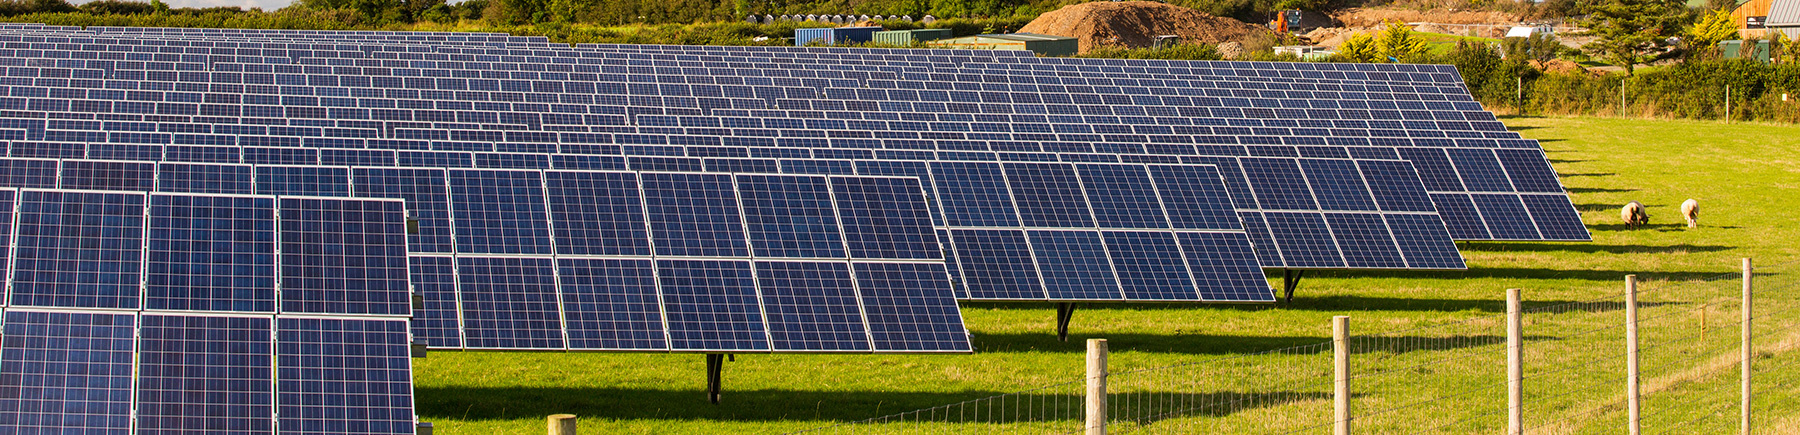 SG Solartechnik für Photovoltaik Freiflächenanlagen